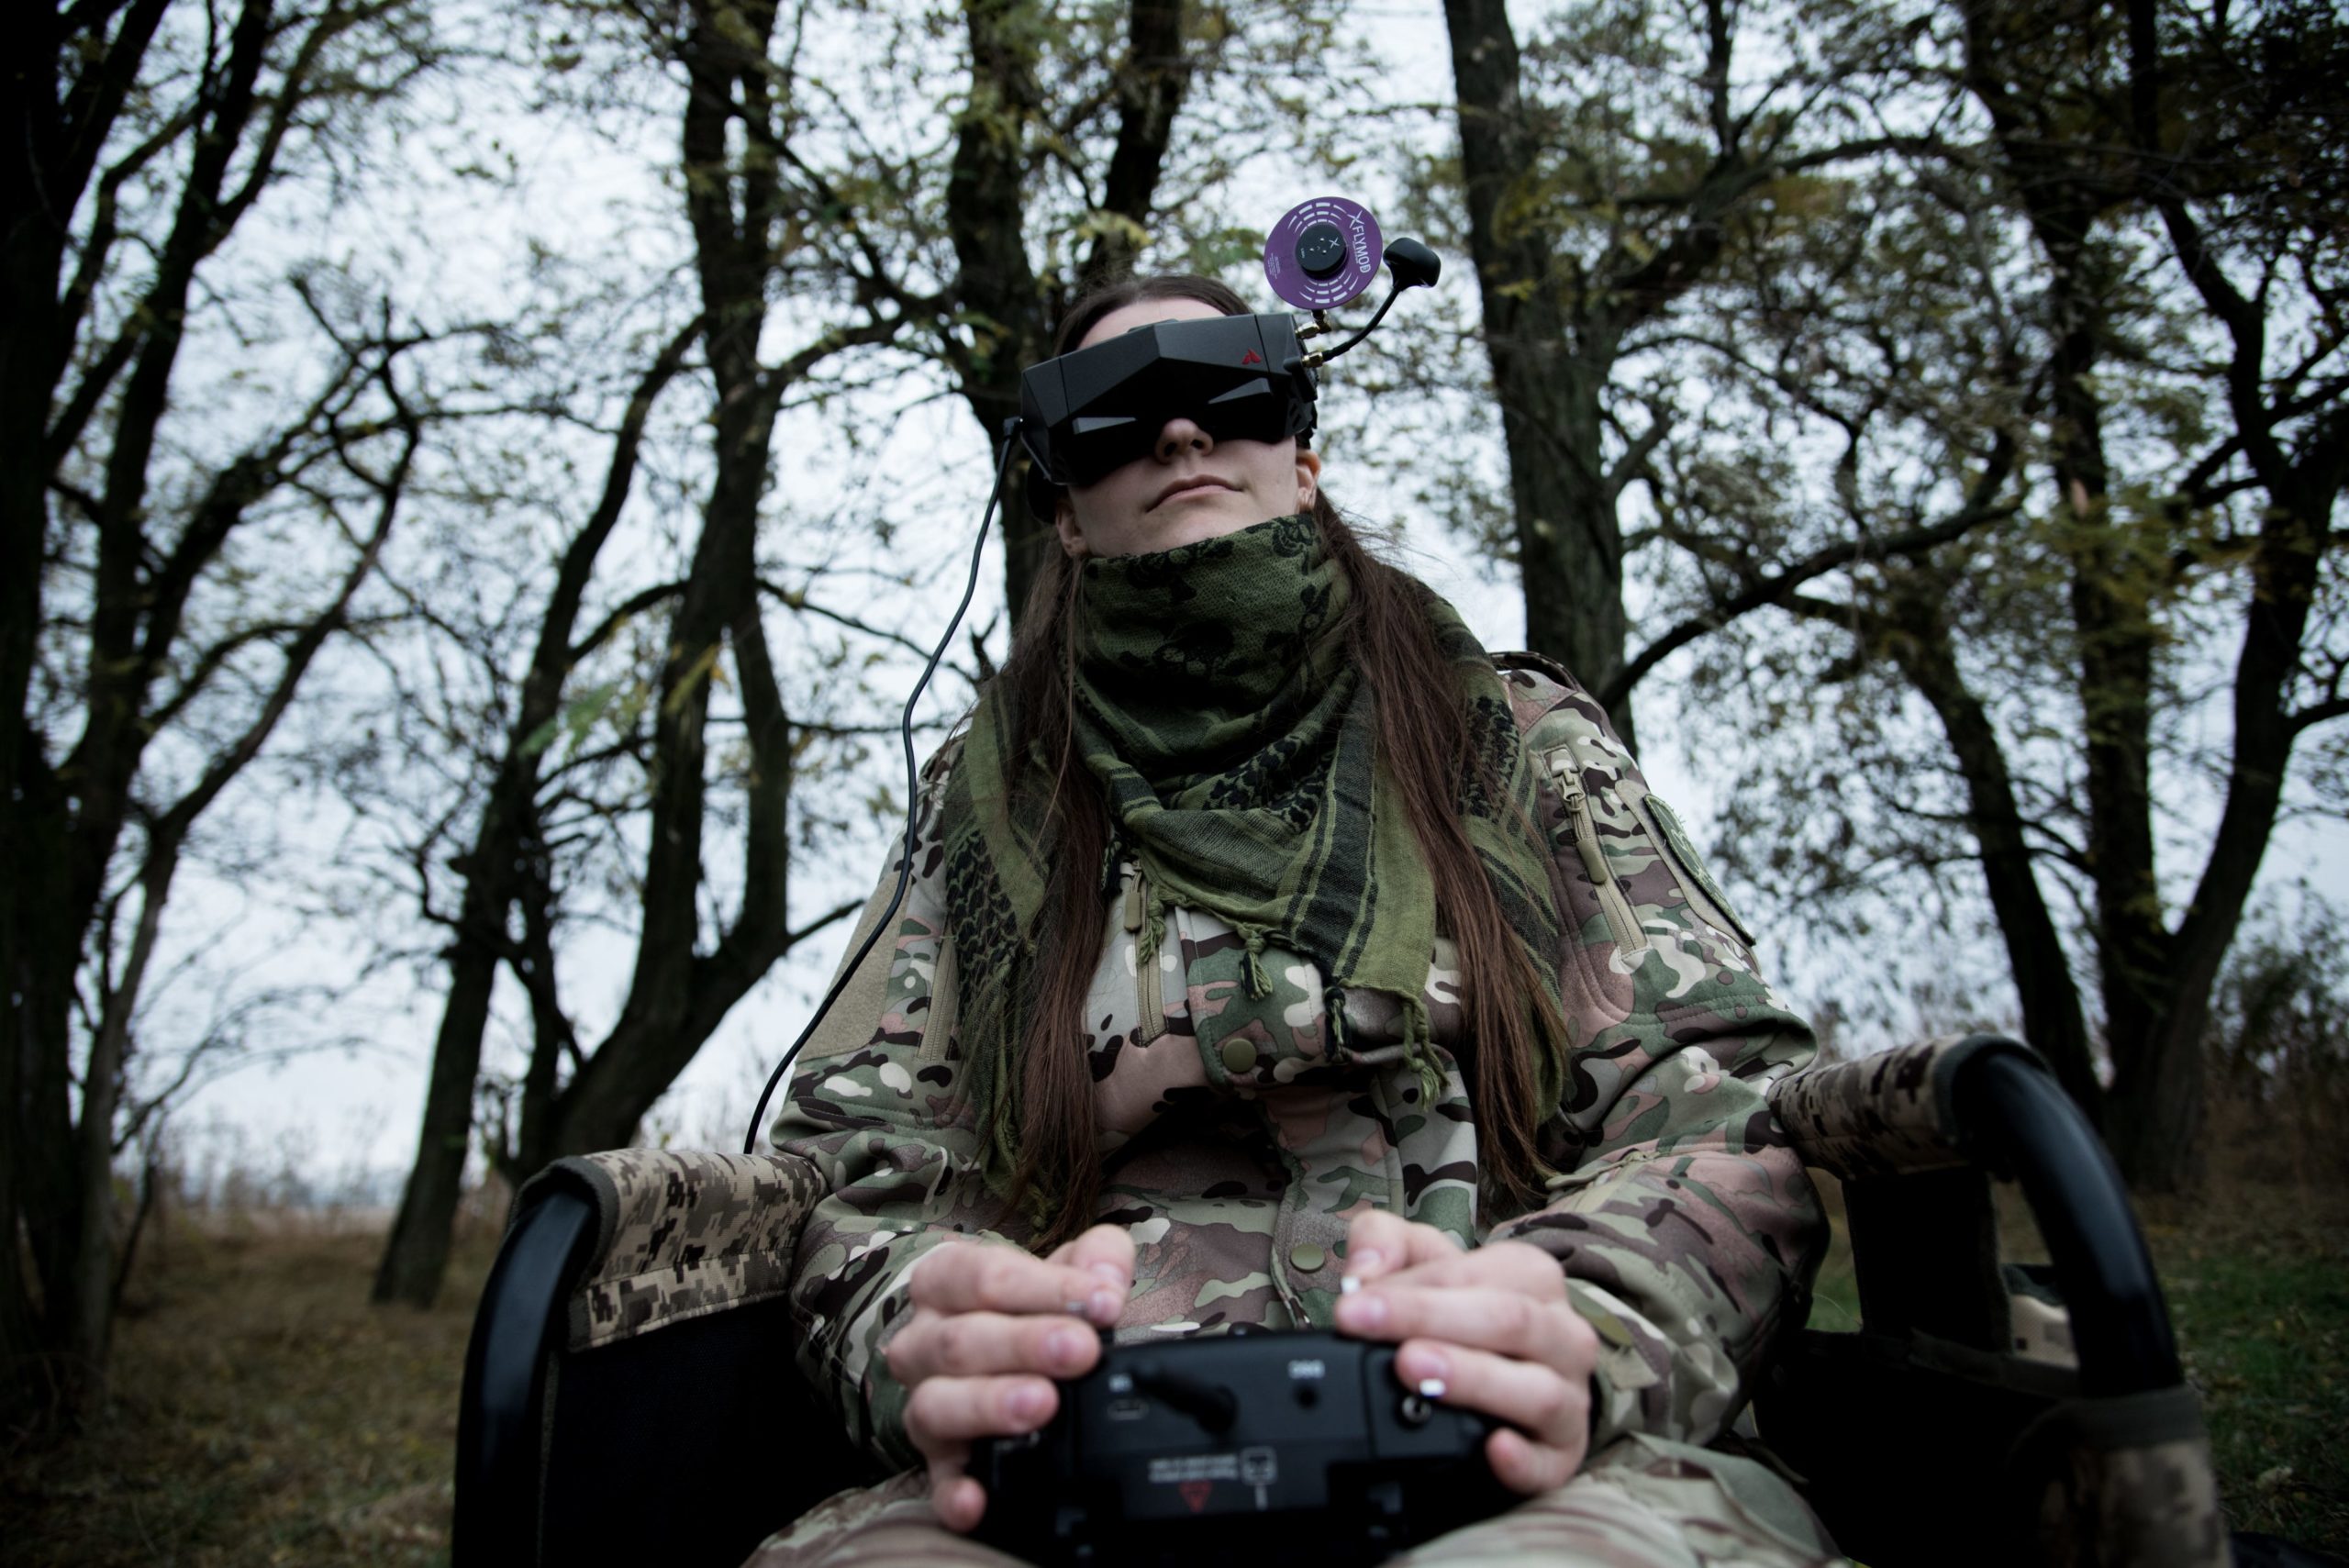 russland rekrutiert weibliche gefangene für das militär, laut eines medienberichts